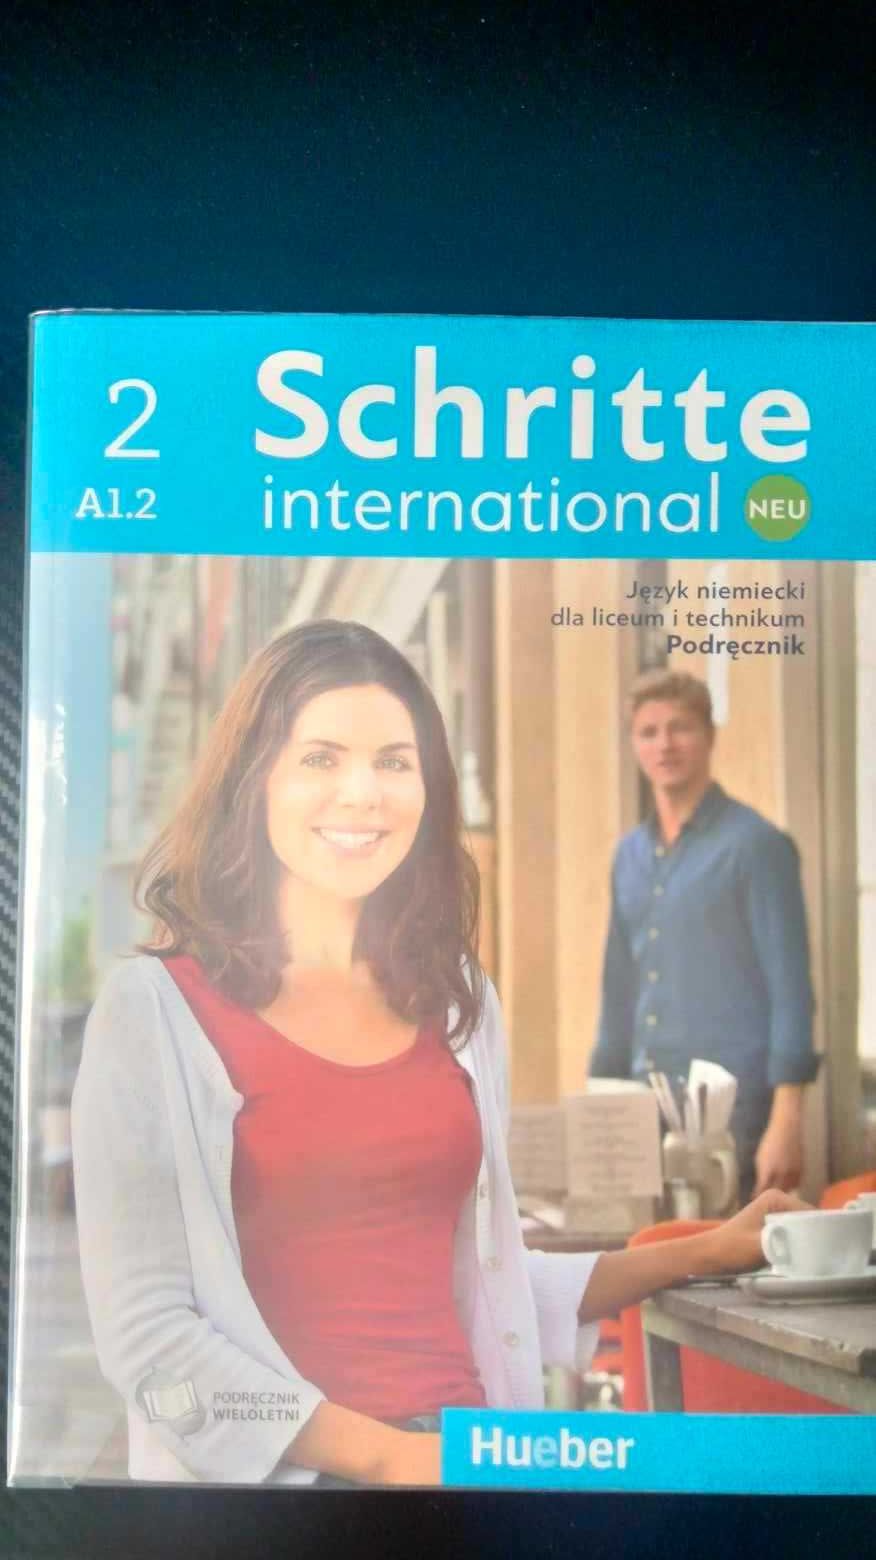 Schritte 2 A1.2 podręcznik j. niemiecki